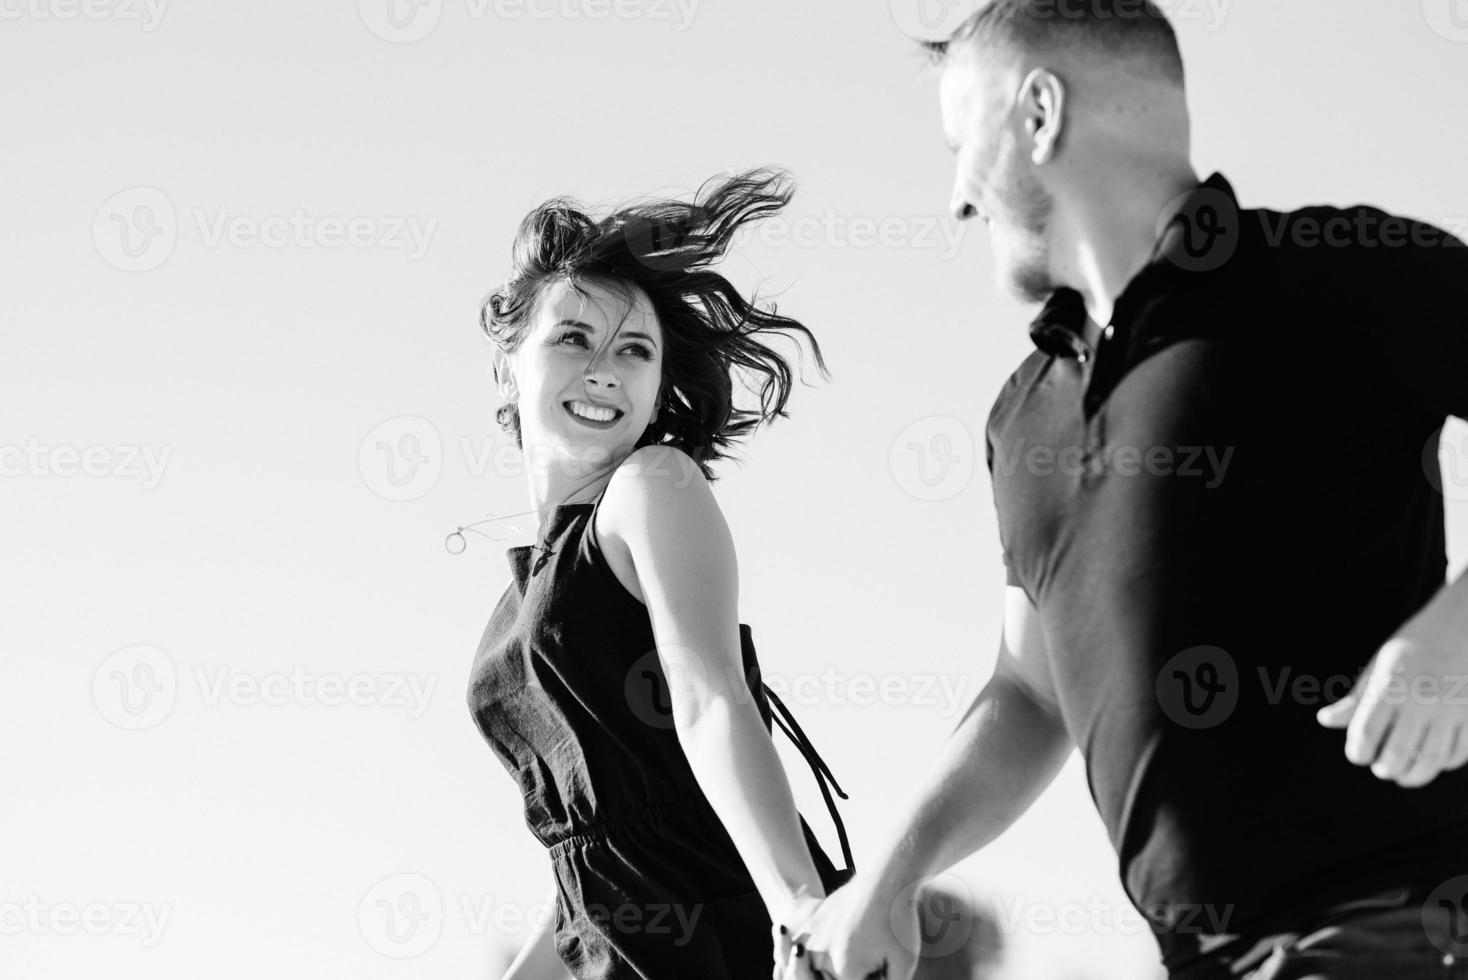 jovem casal um garoto e uma garota com emoções alegres em roupas pretas caminham pelo deserto branco foto